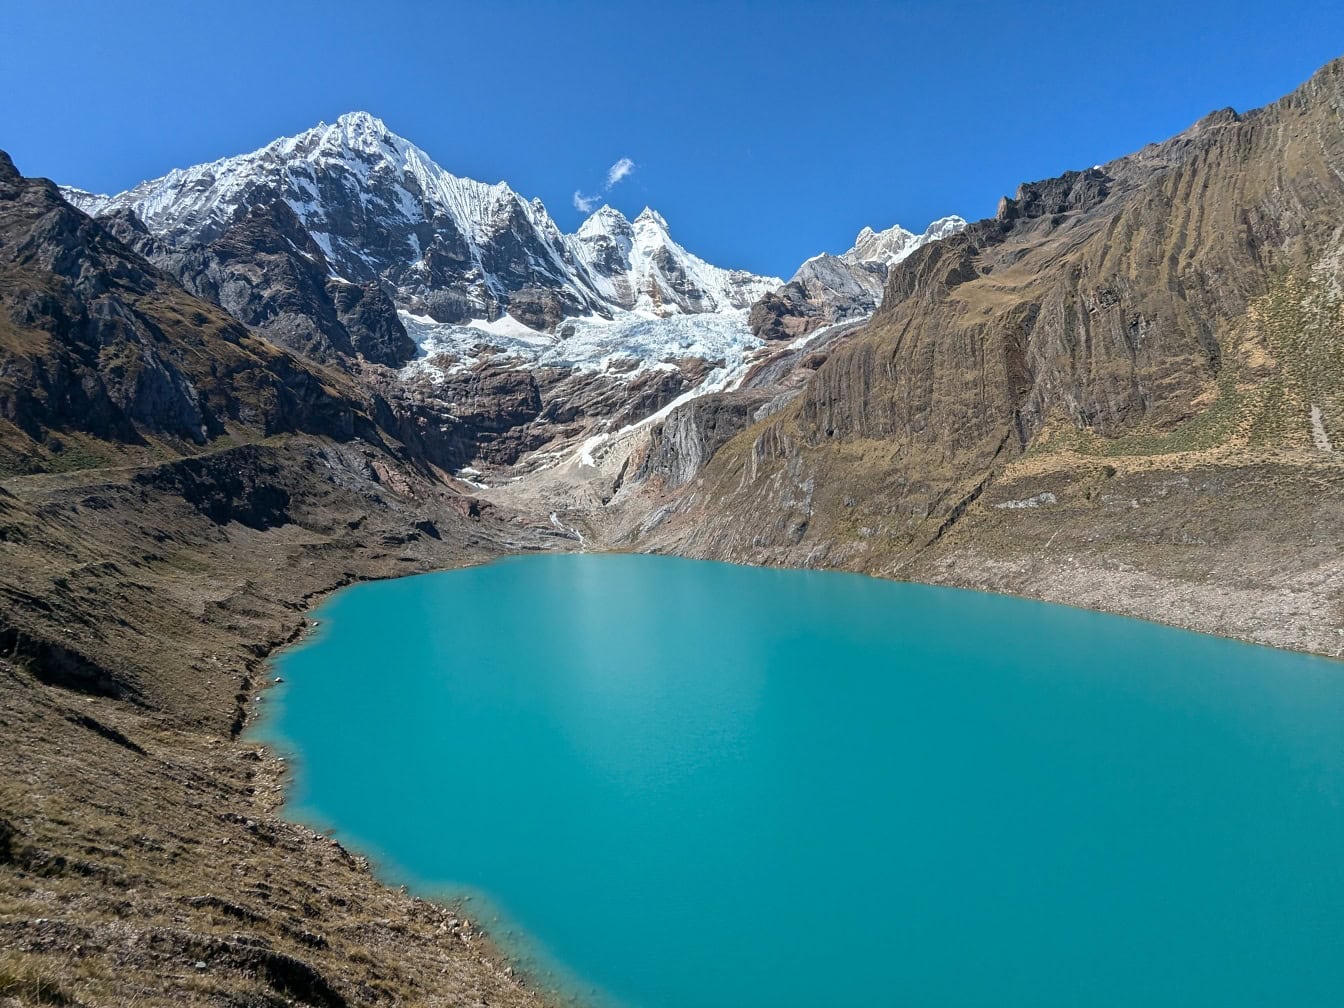 En naturskøn udsigt over turkis Llanguanco sø i naturpark ved Cordillera Huayhuash bjergkæde i Andesbjergene i Peru